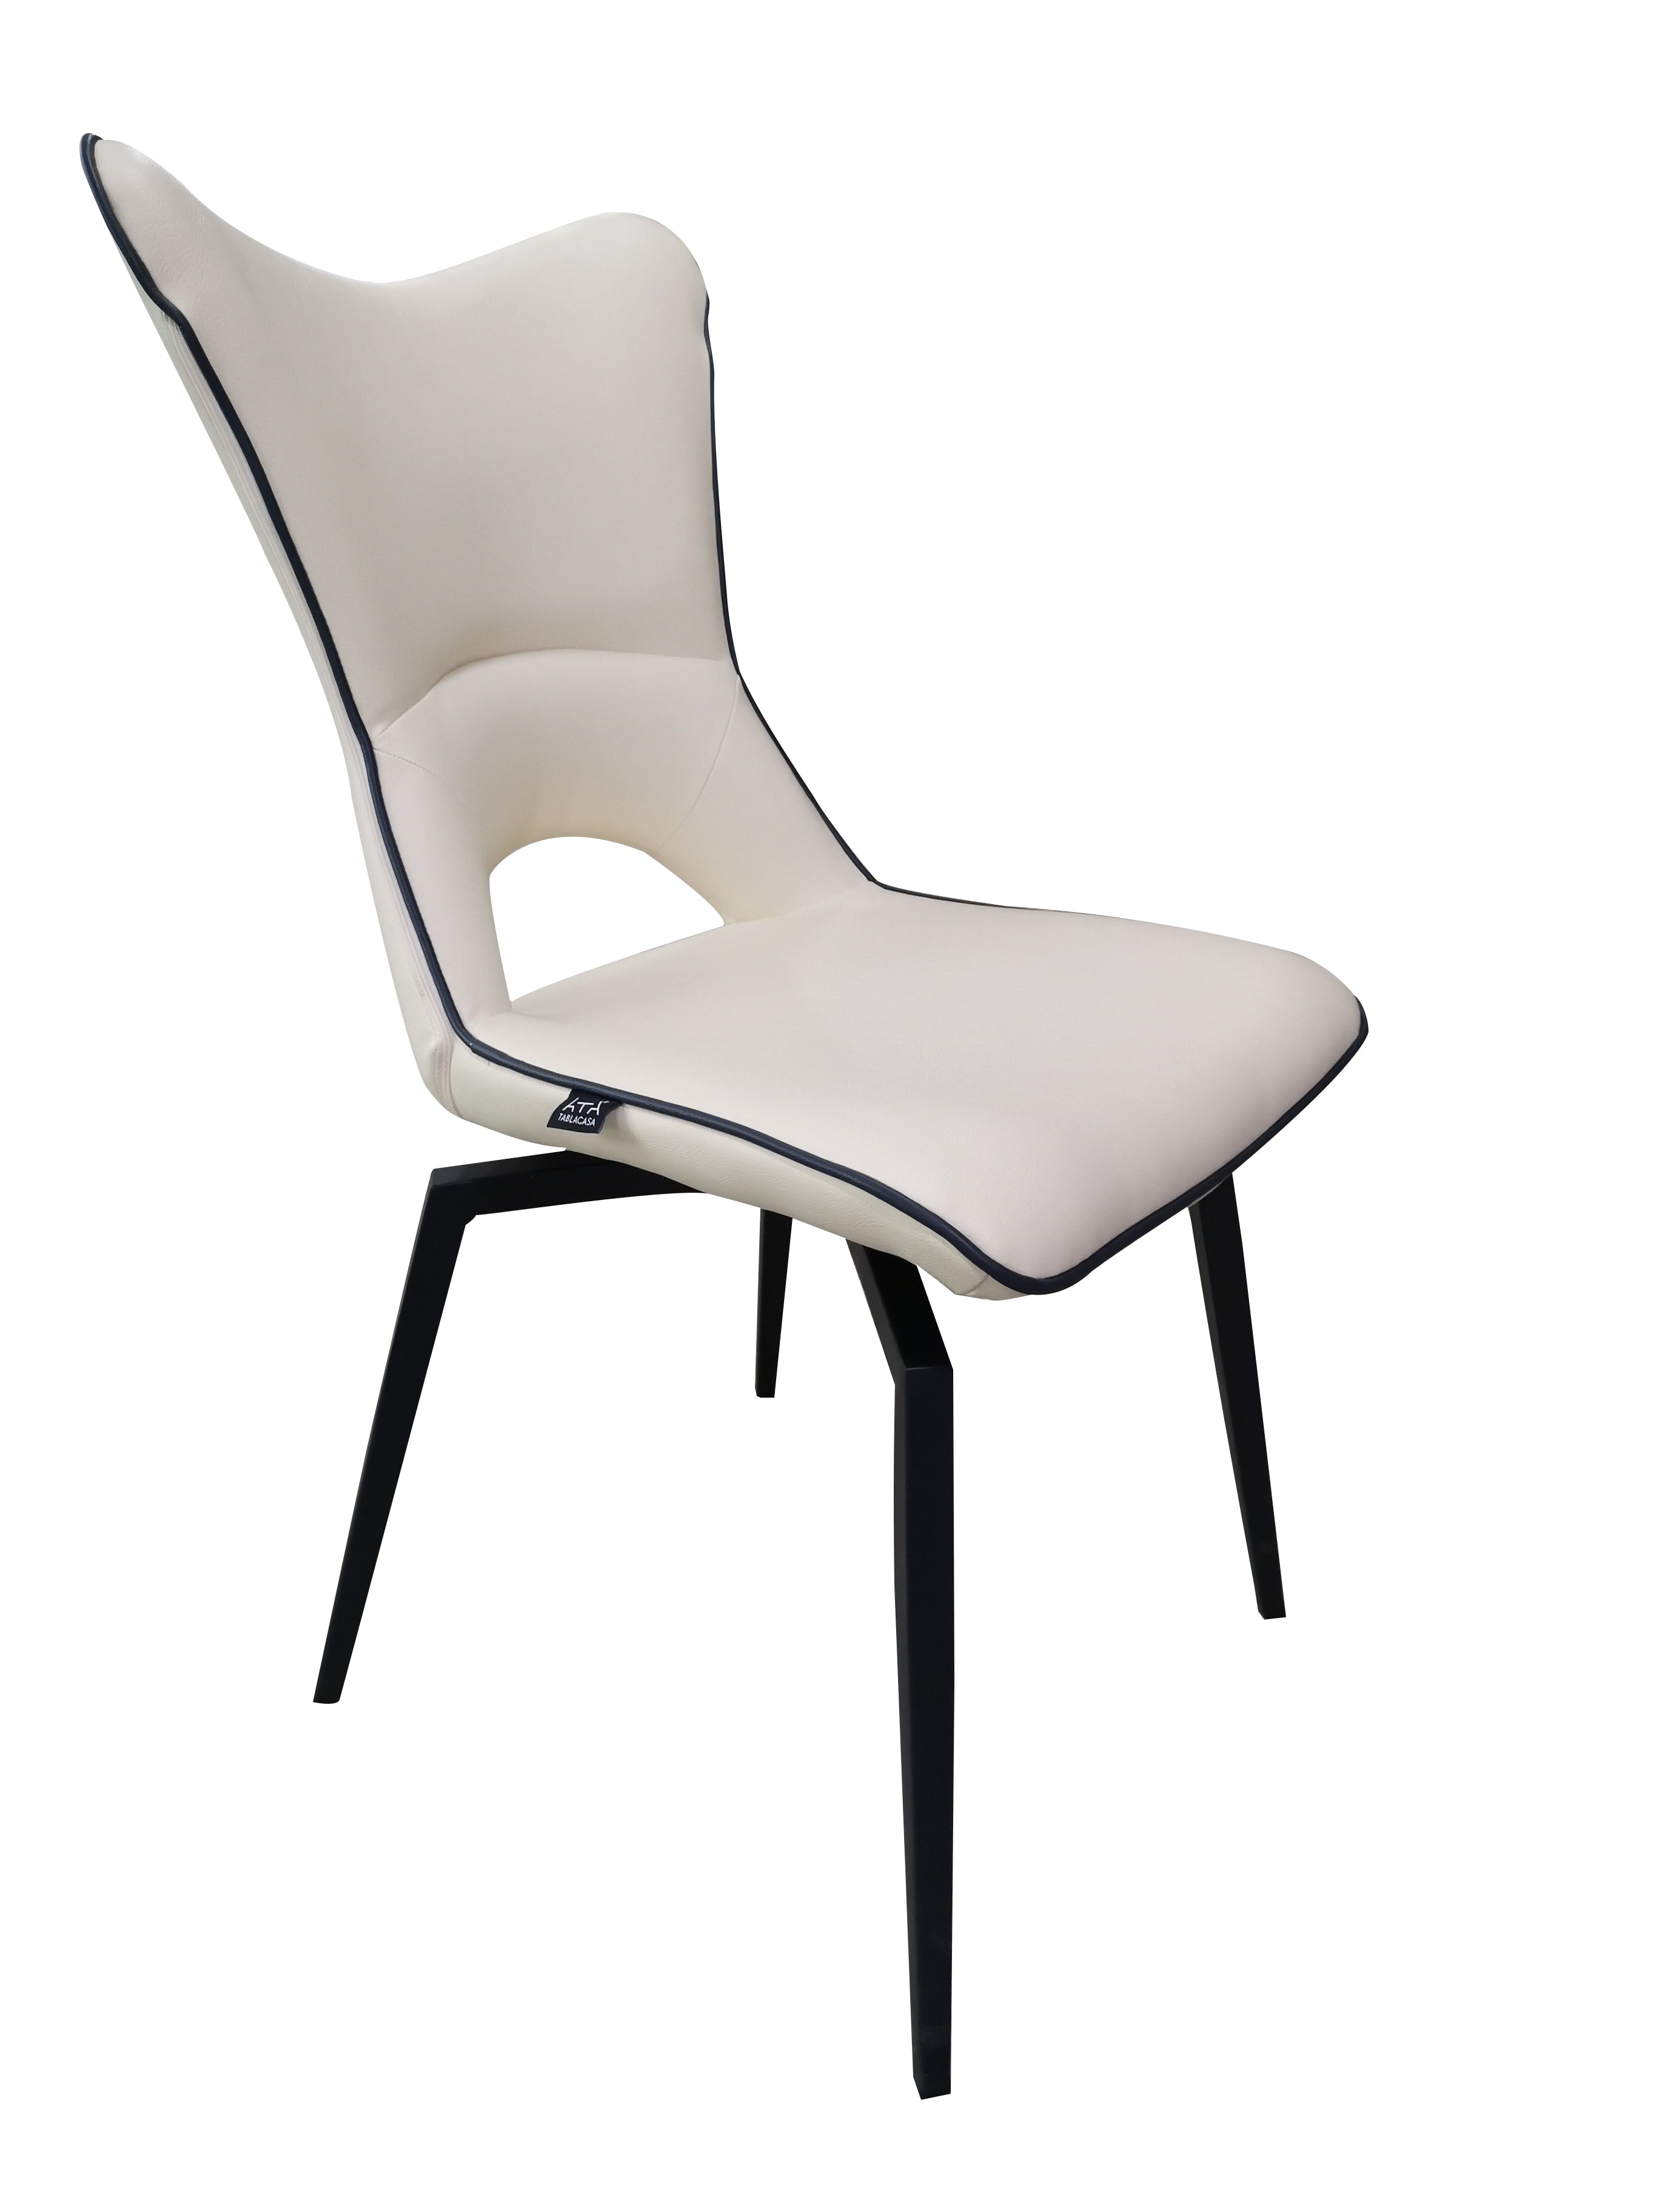 Chaise pivotante design en tissu bouclé beige avec pied en métal noir